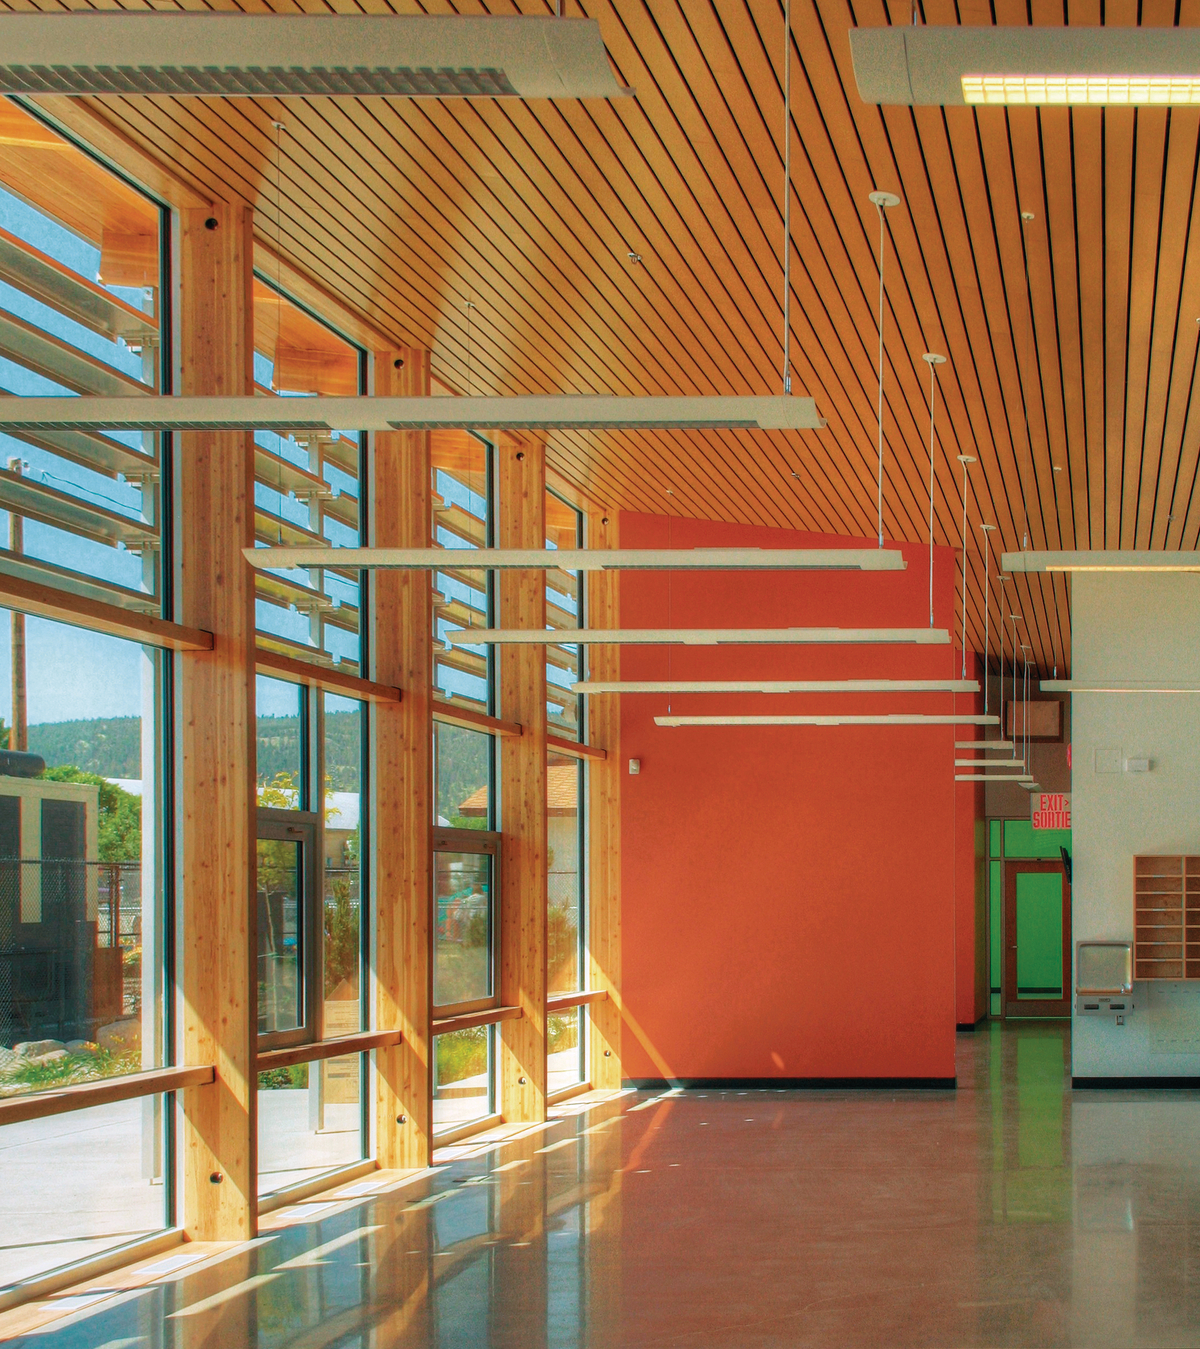 室内阳光明媚的白天景观突出了垂直块状木柱的使用，以及木装饰和装饰尺寸的木材天花板，位于新完成的Summerland RCMP支队内